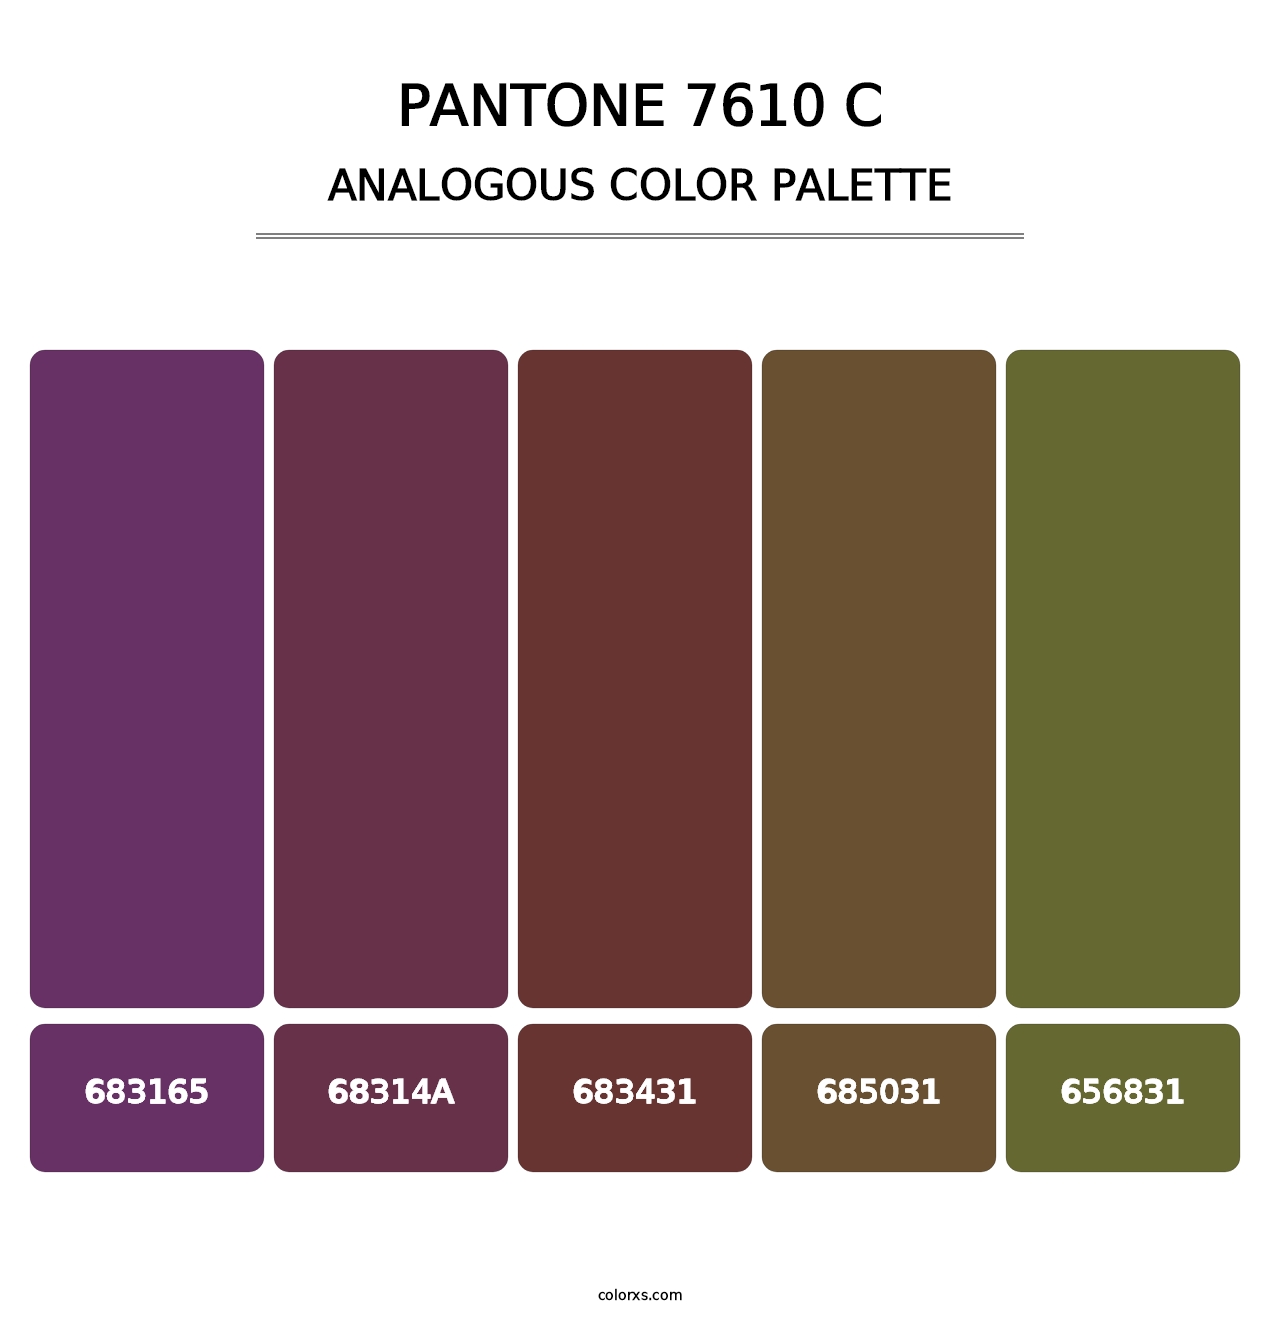 PANTONE 7610 C - Analogous Color Palette